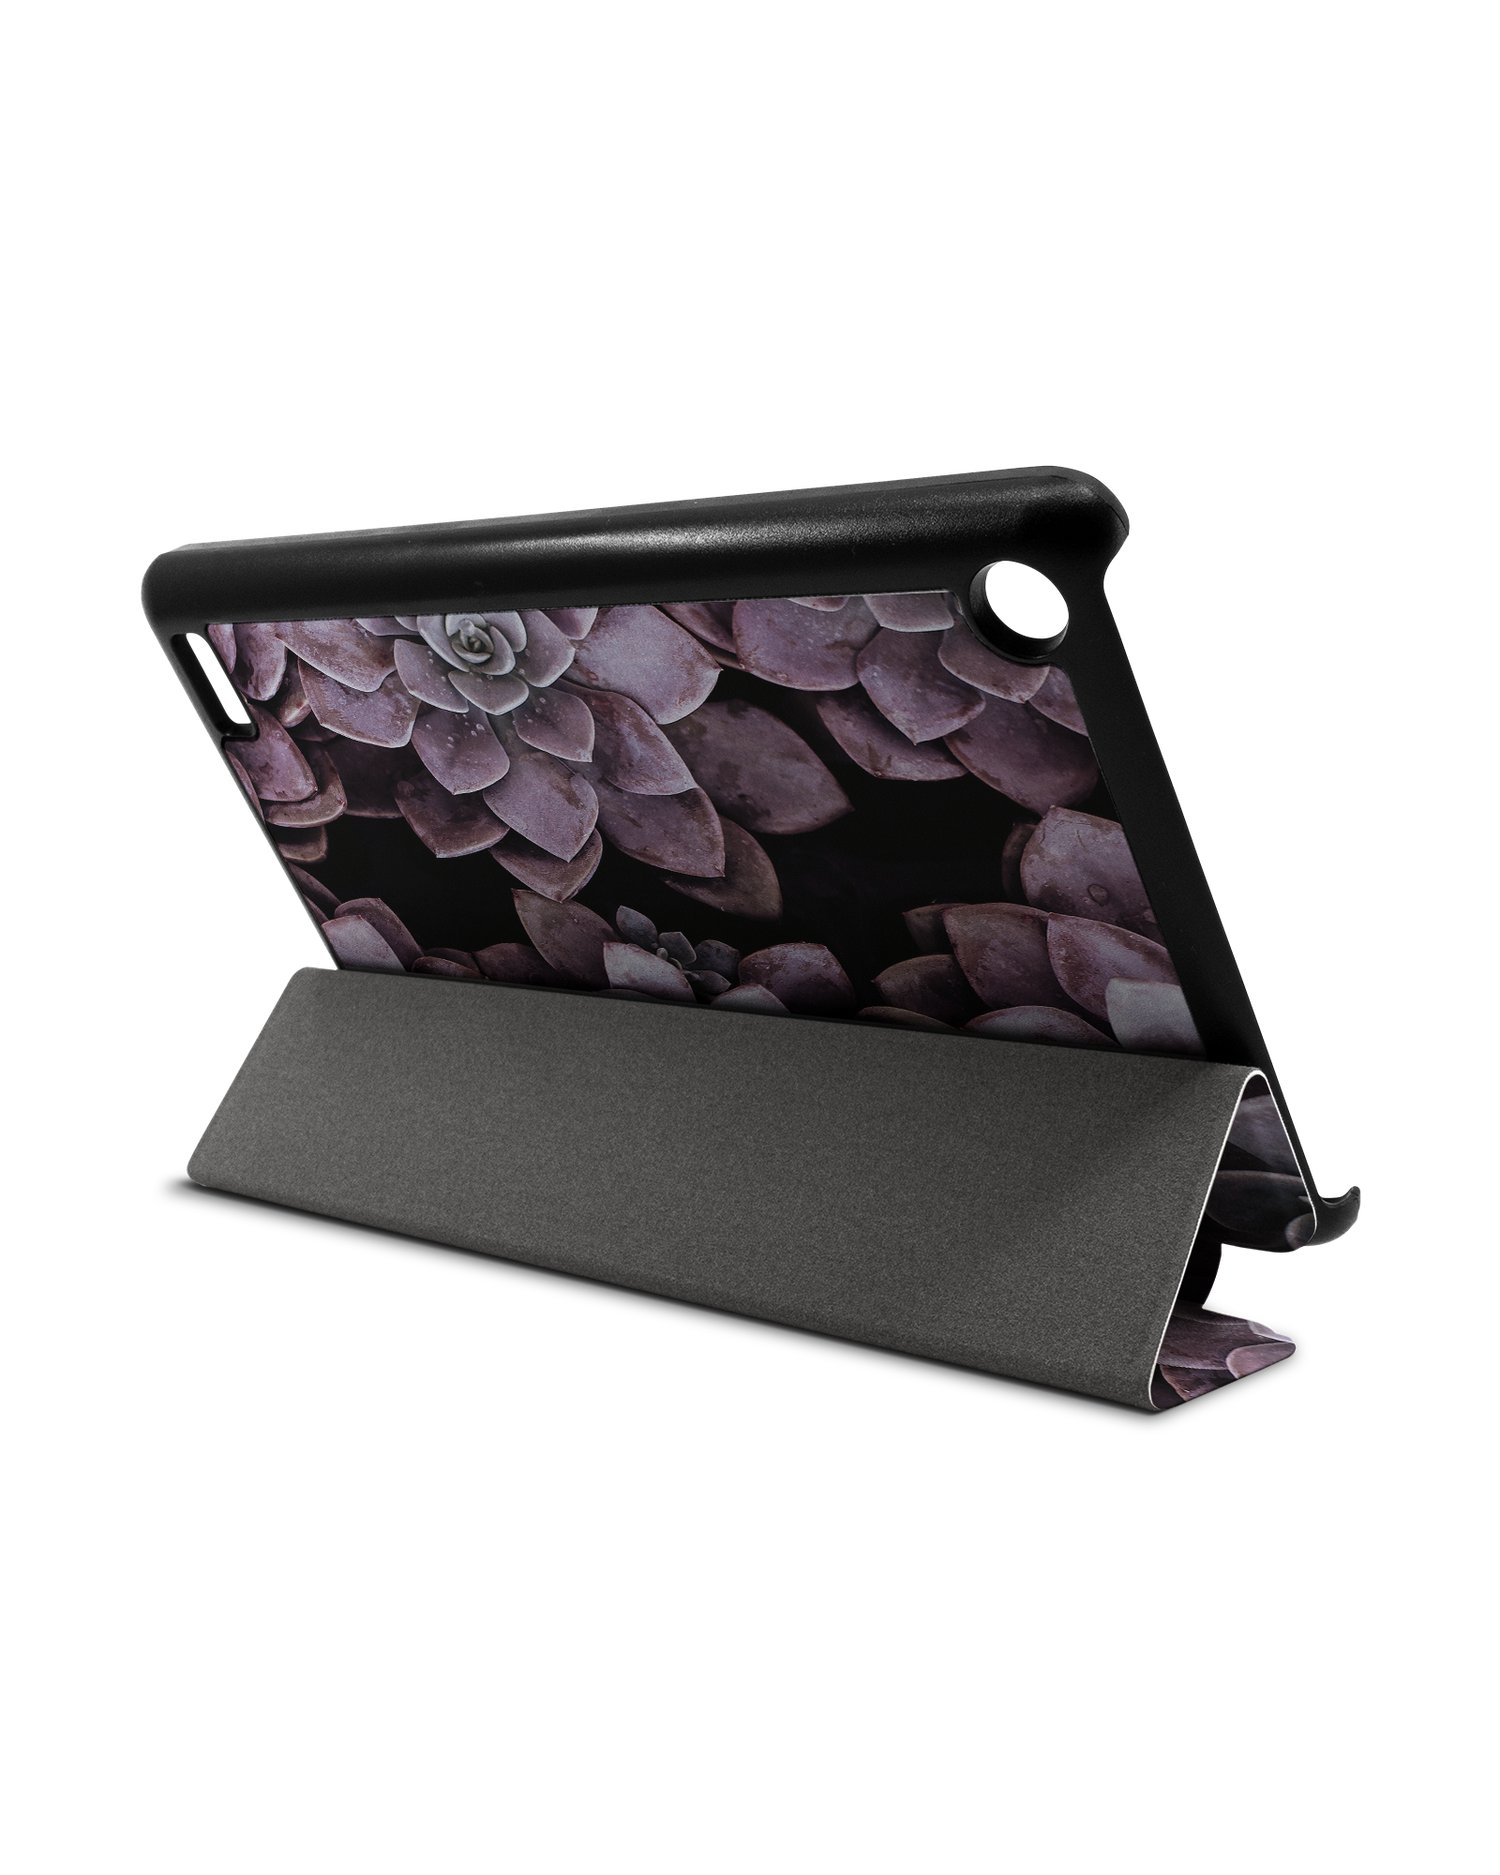 Purple Succulents Tablet Smart Case für Amazon Fire 7: Aufgestellt im Querformat